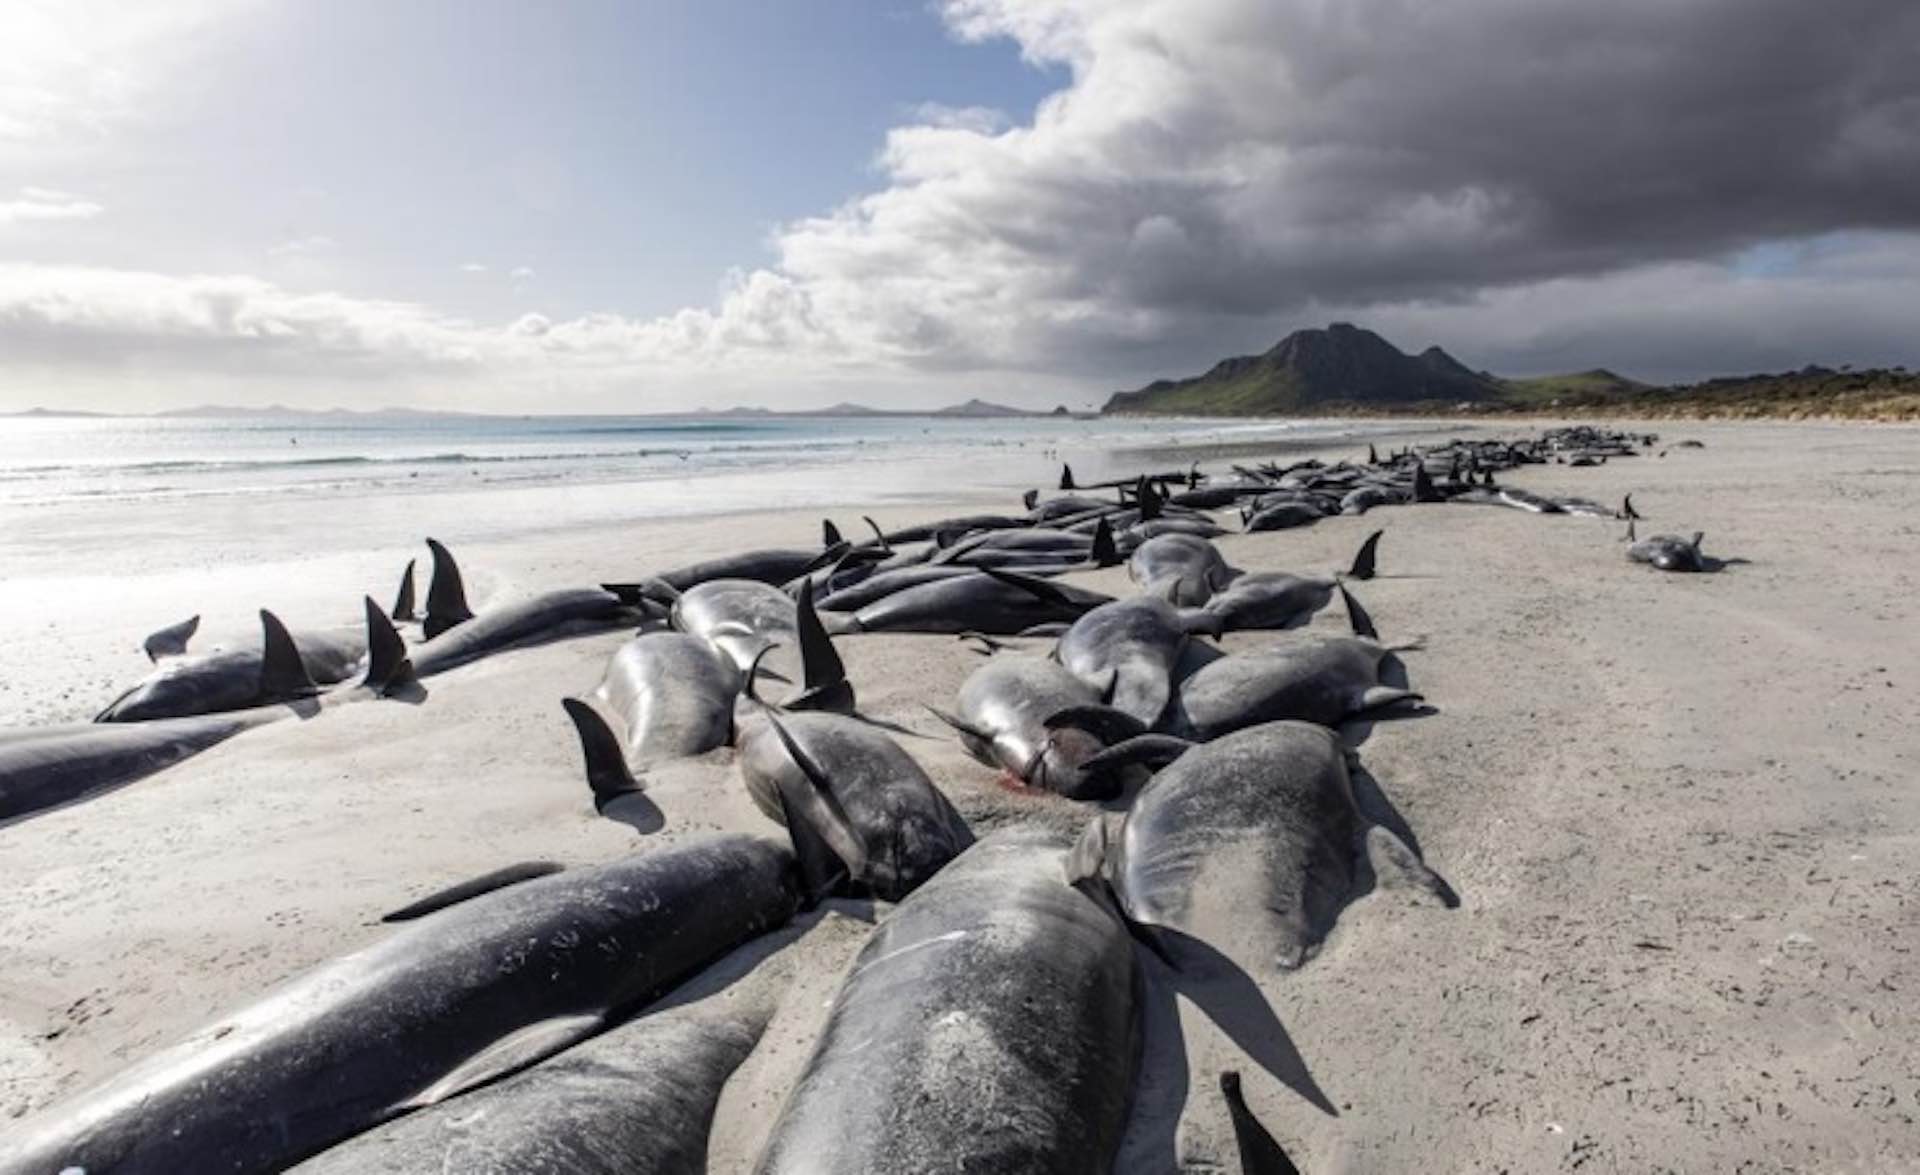 Tragic New Zealand strandings kill 477 whales